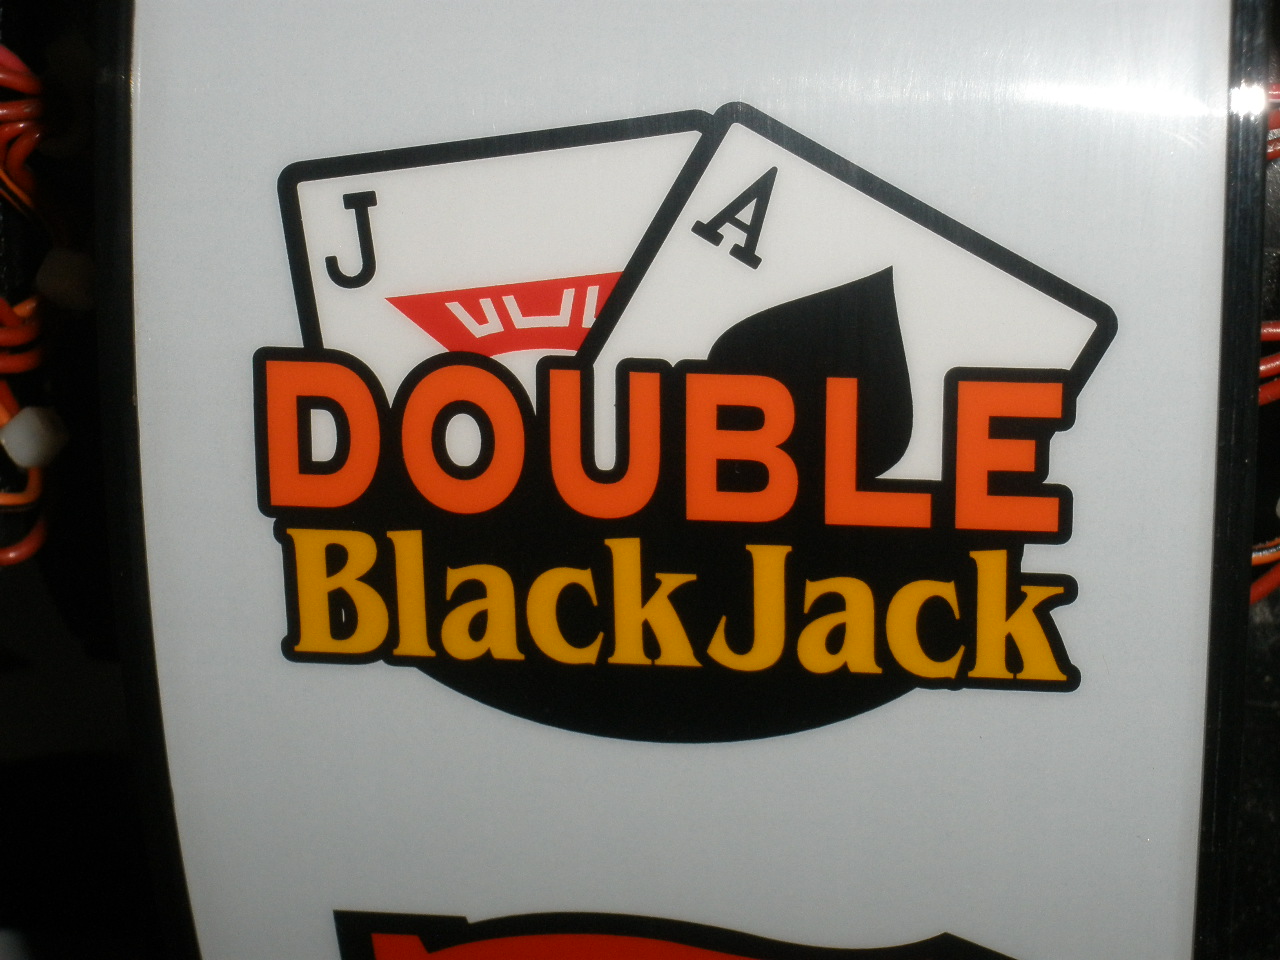 cerol blackjack